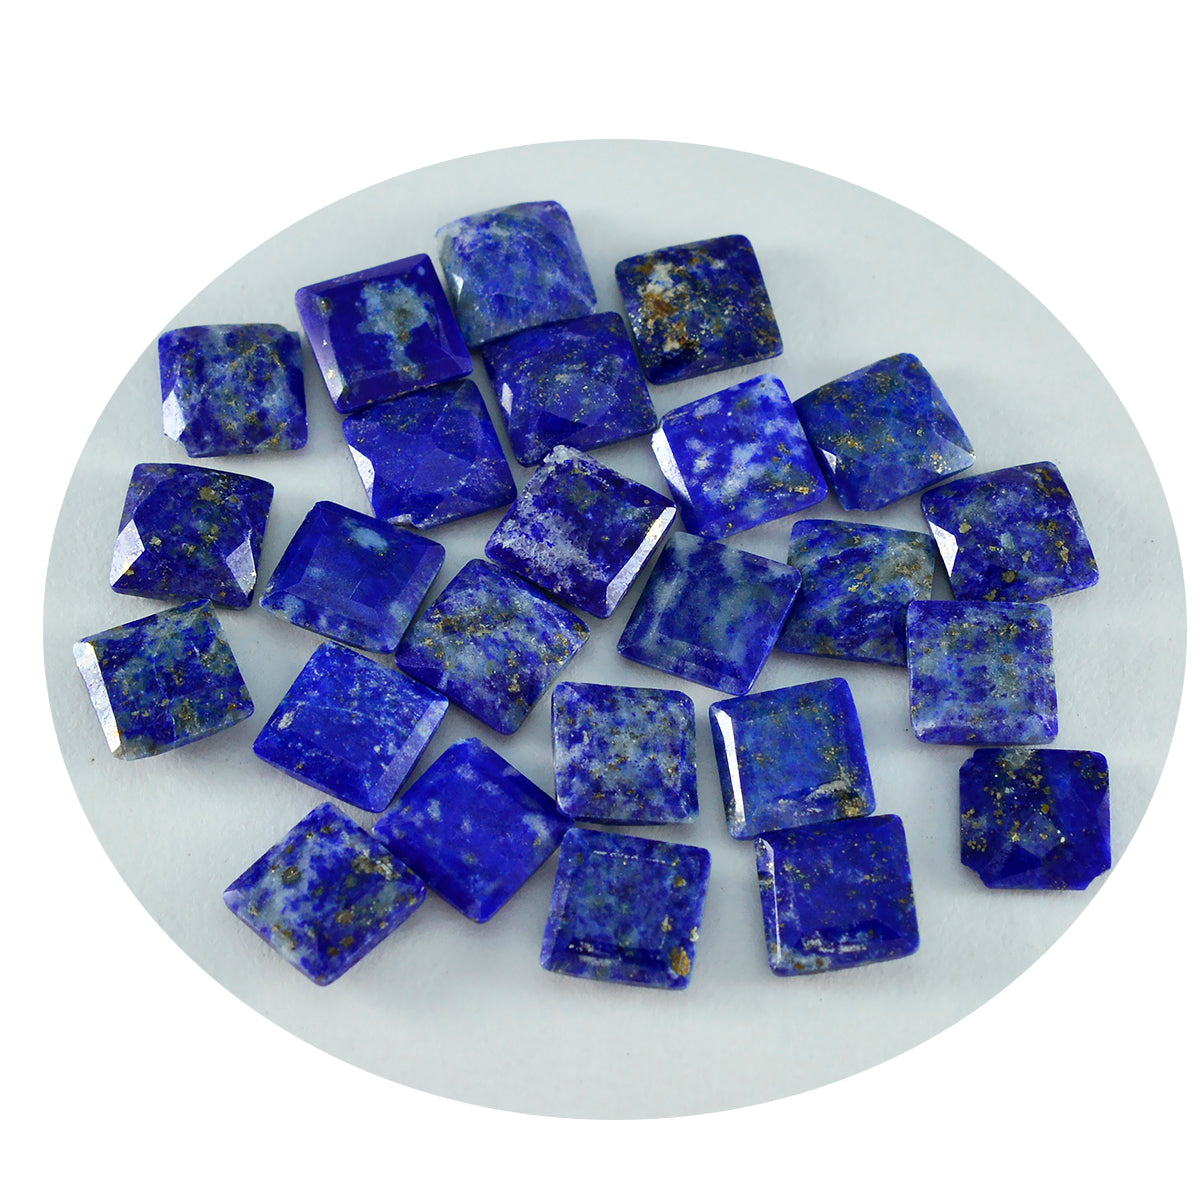 Riyogems 1 pièce de lapis-lazuli bleu véritable à facettes 6x6mm de forme carrée, belle pierre précieuse de qualité